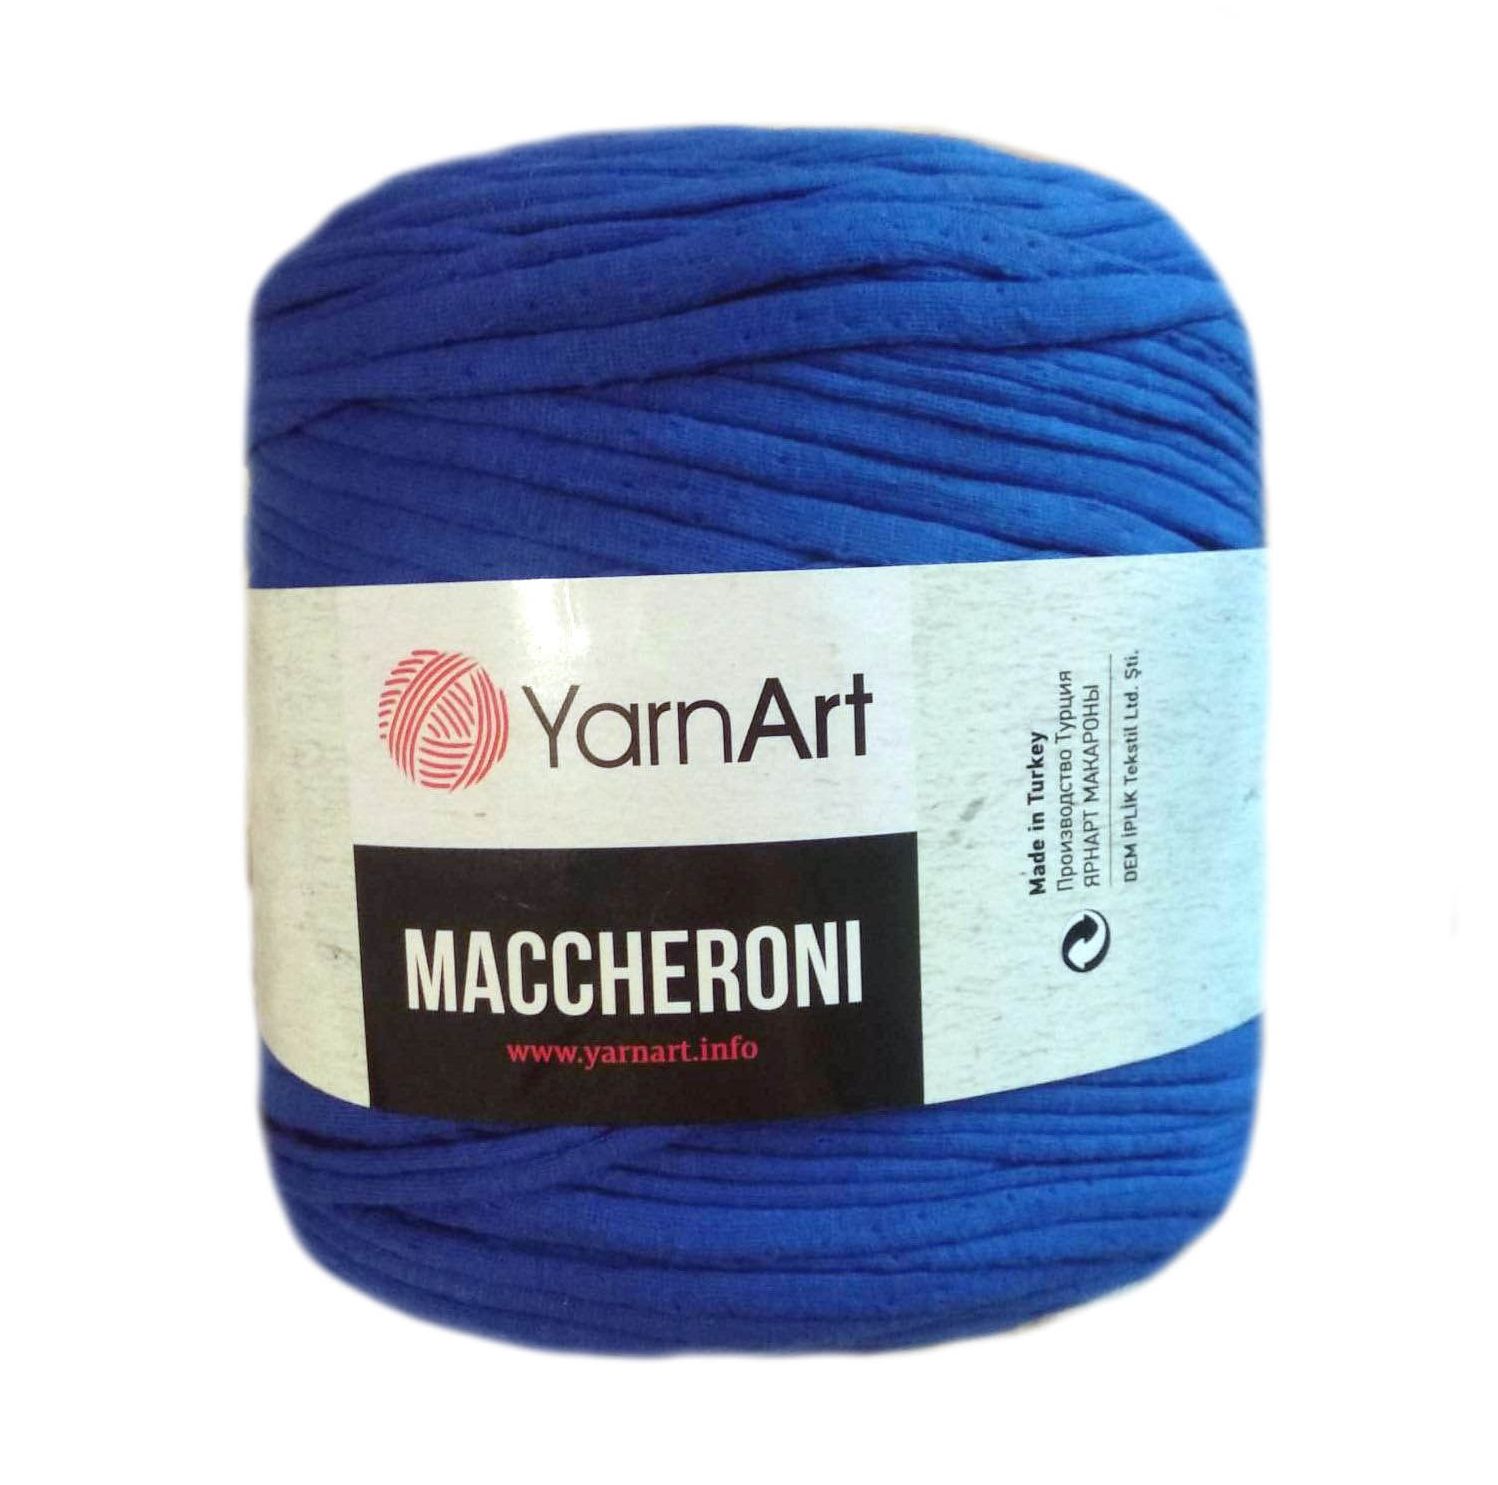 YarnArt MACCHERONI, királykék  póló fonal. Tű 12-15 mm.